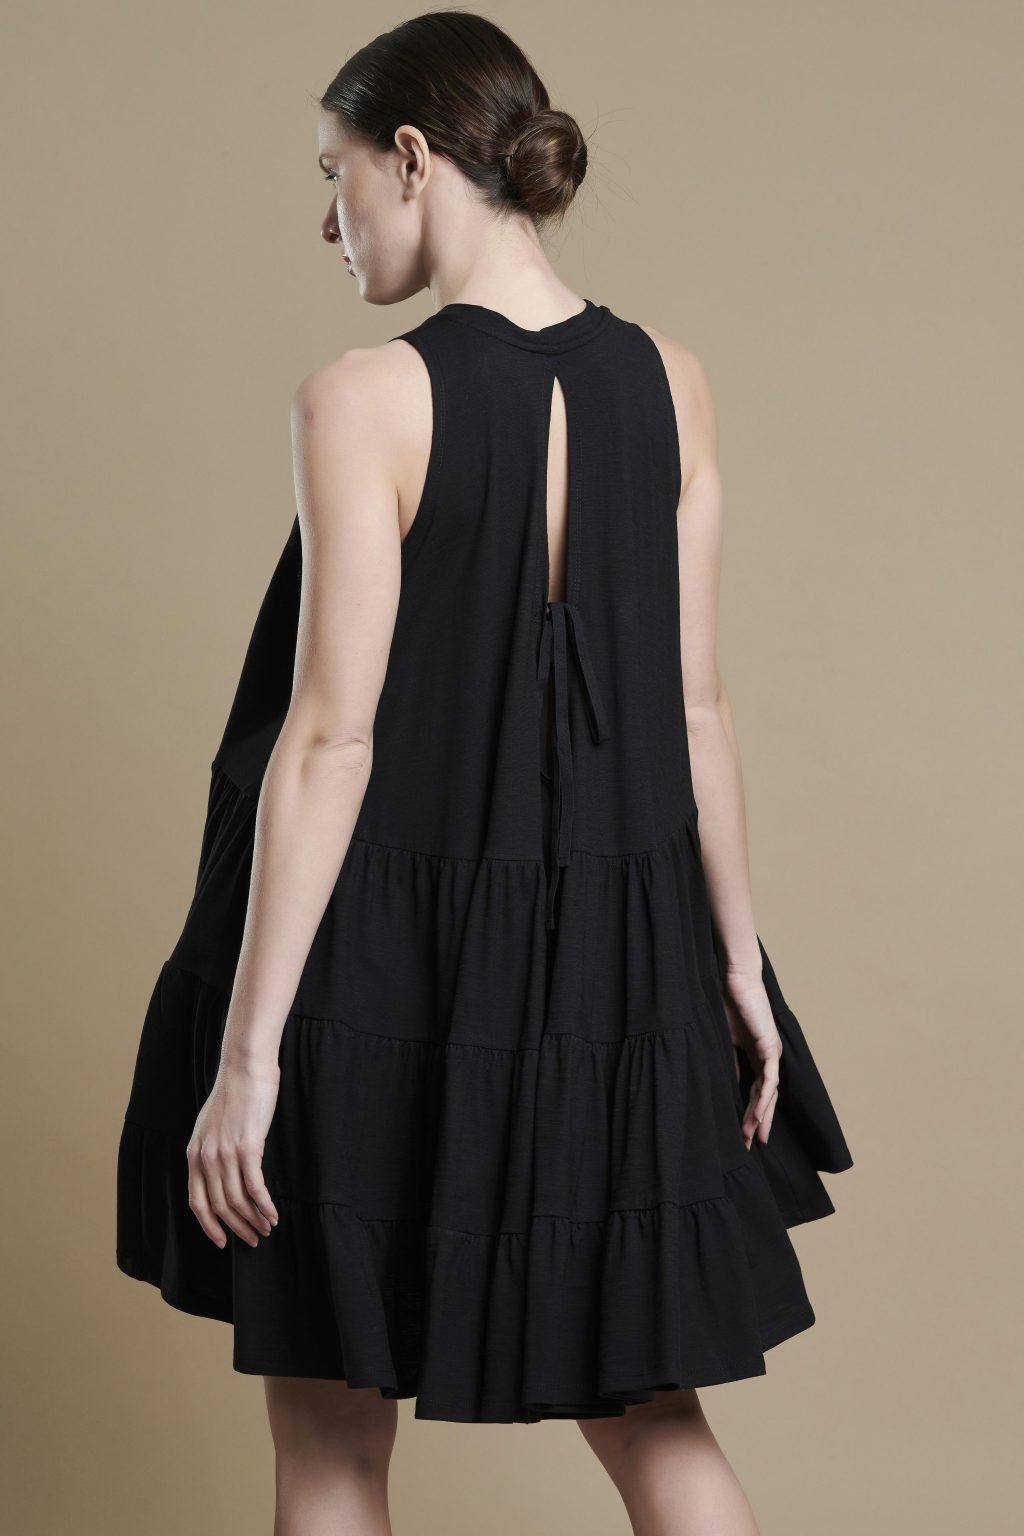 Φόρεμα Μαύρο THE HOUSE OF ANGELS DW-S21-705 BLACK - Nook 